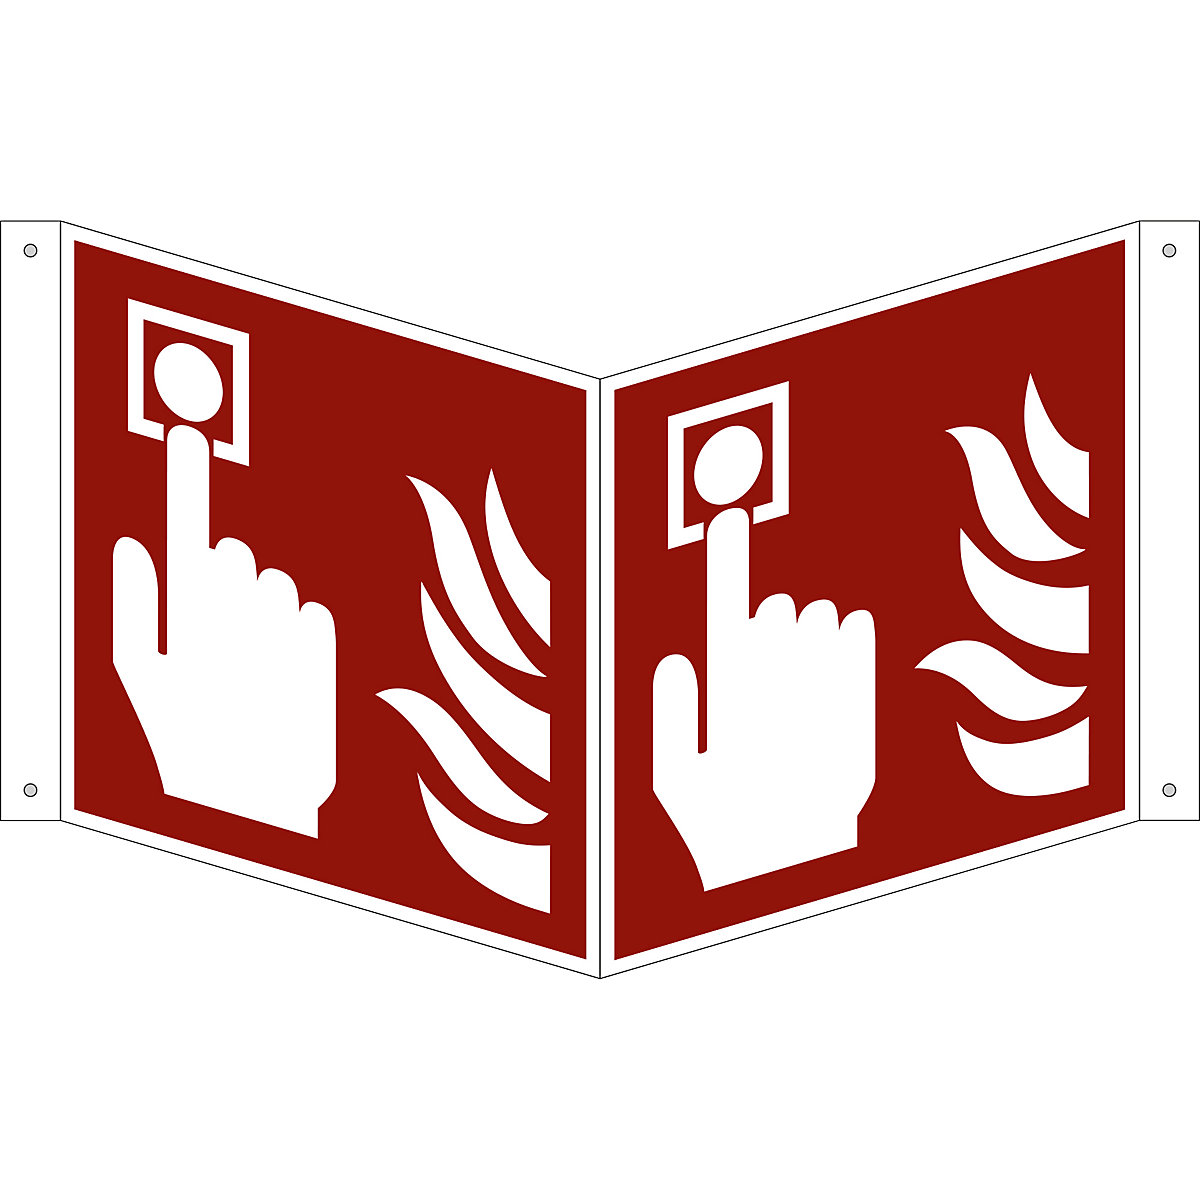 Značka pro ochranu proti požáru, požární hlásič, bal.j. 10 ks, plast, vysunutý štítek, 200 x 200 mm